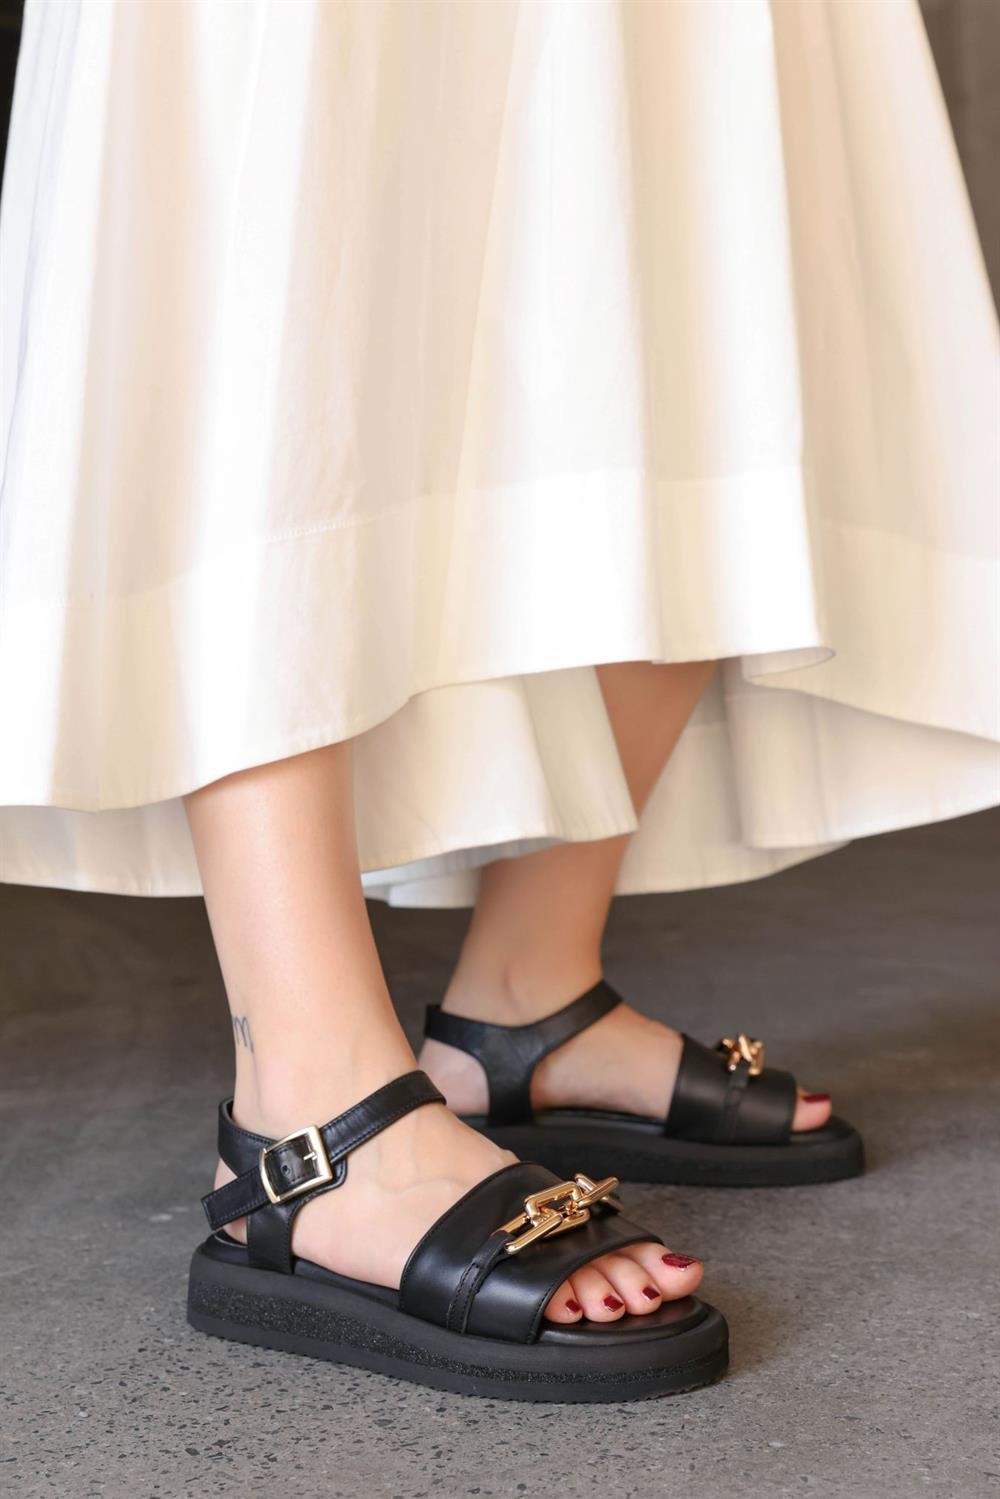 Nilufarr Caremio Siyah Hakiki Deri Altın Tokalı Kadın Sandalet